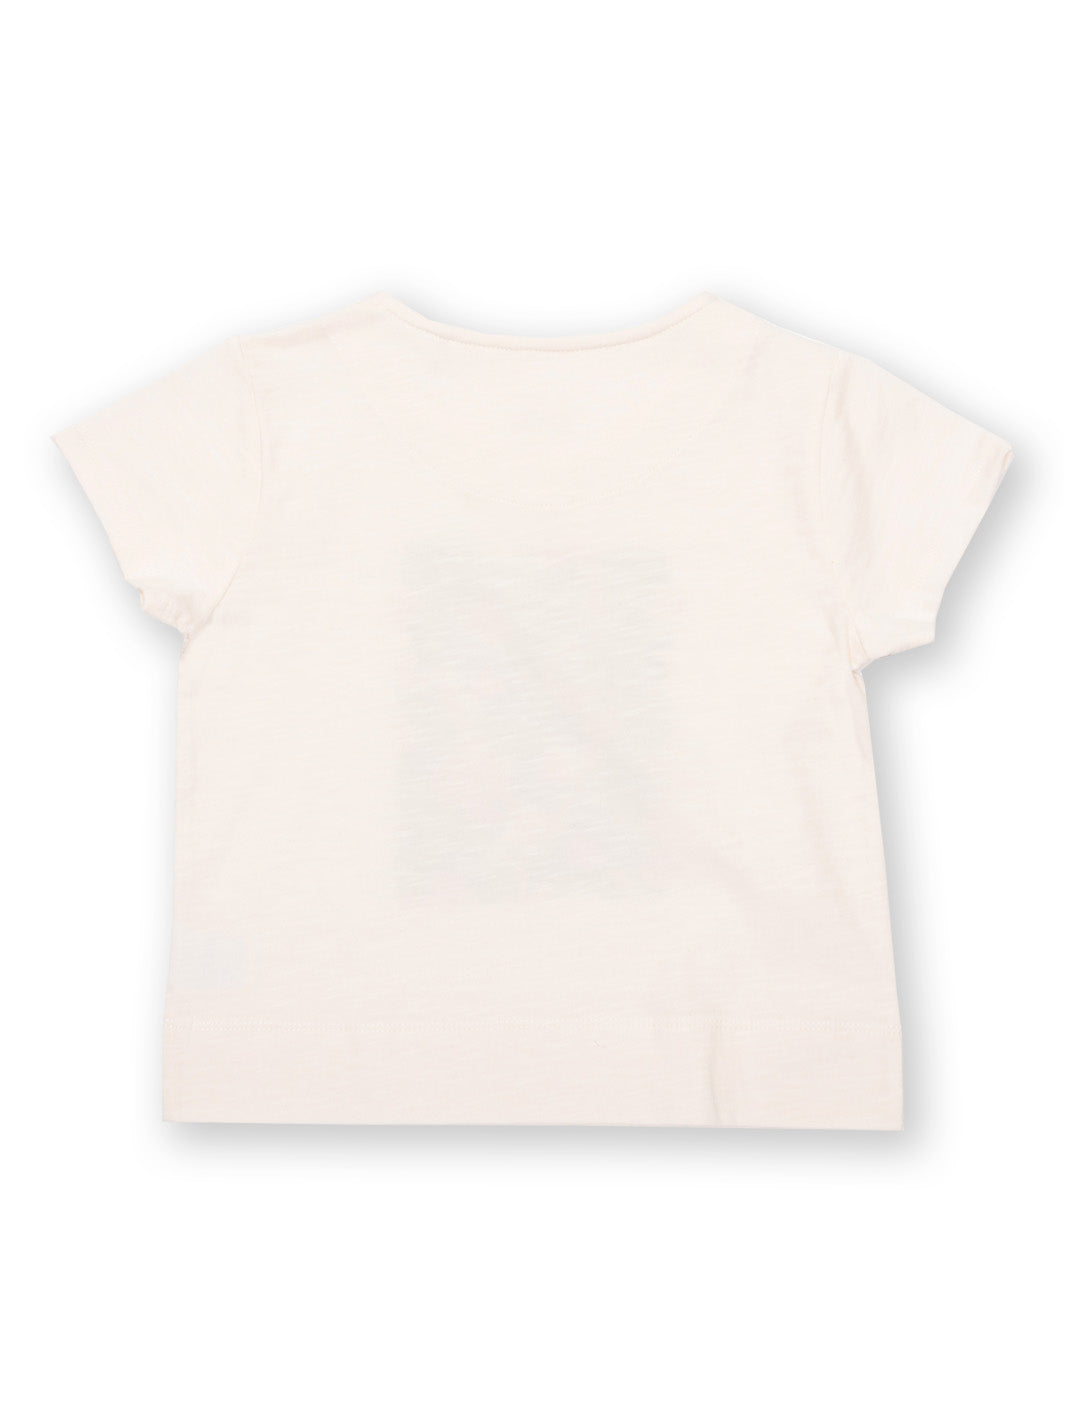 Kite - Orangutan T-Shirt